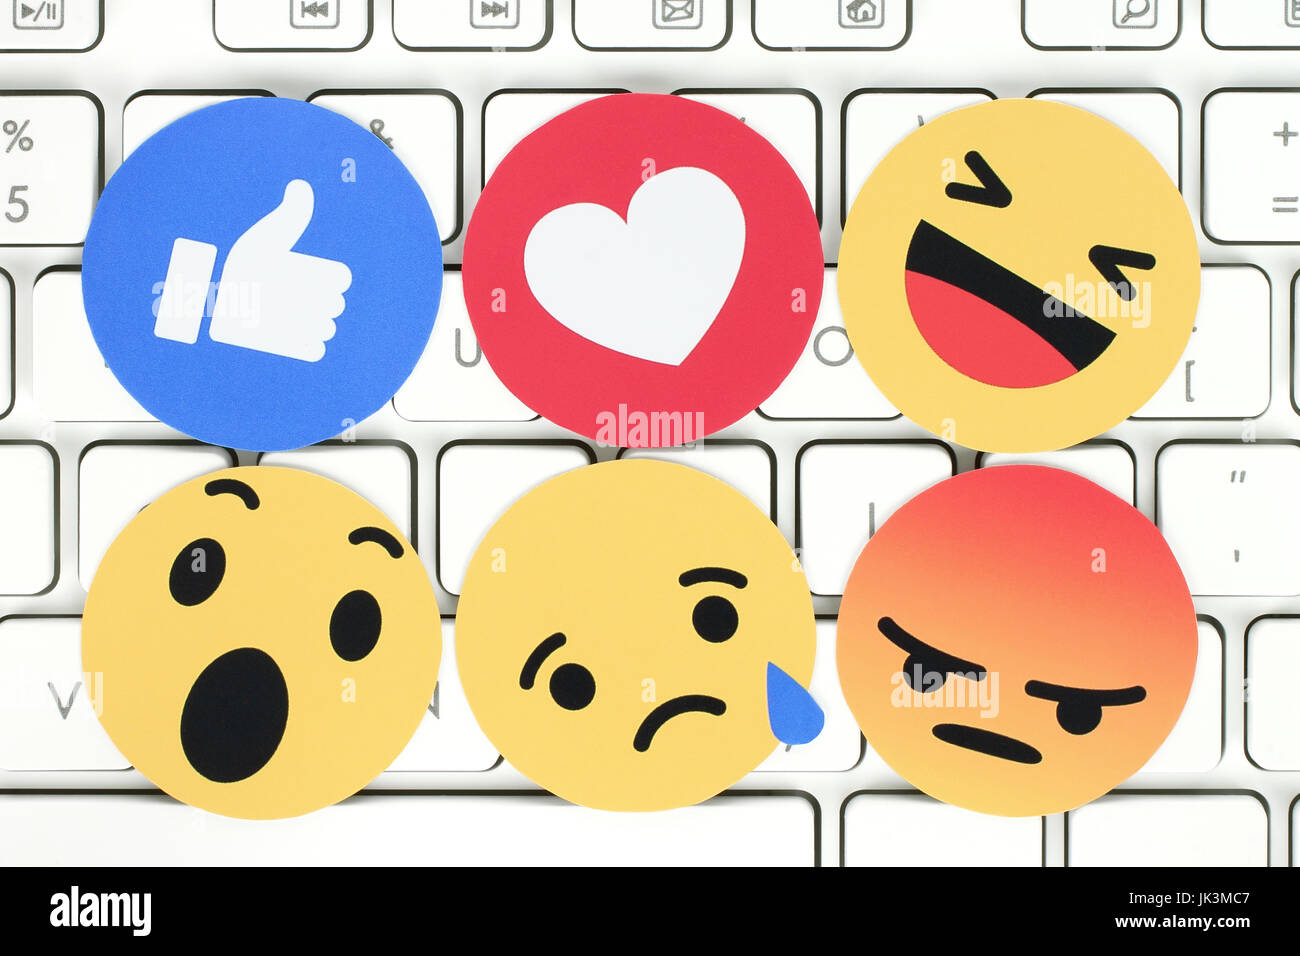 Emoji keyboard -Fotos und -Bildmaterial in hoher Auflösung – Alamy